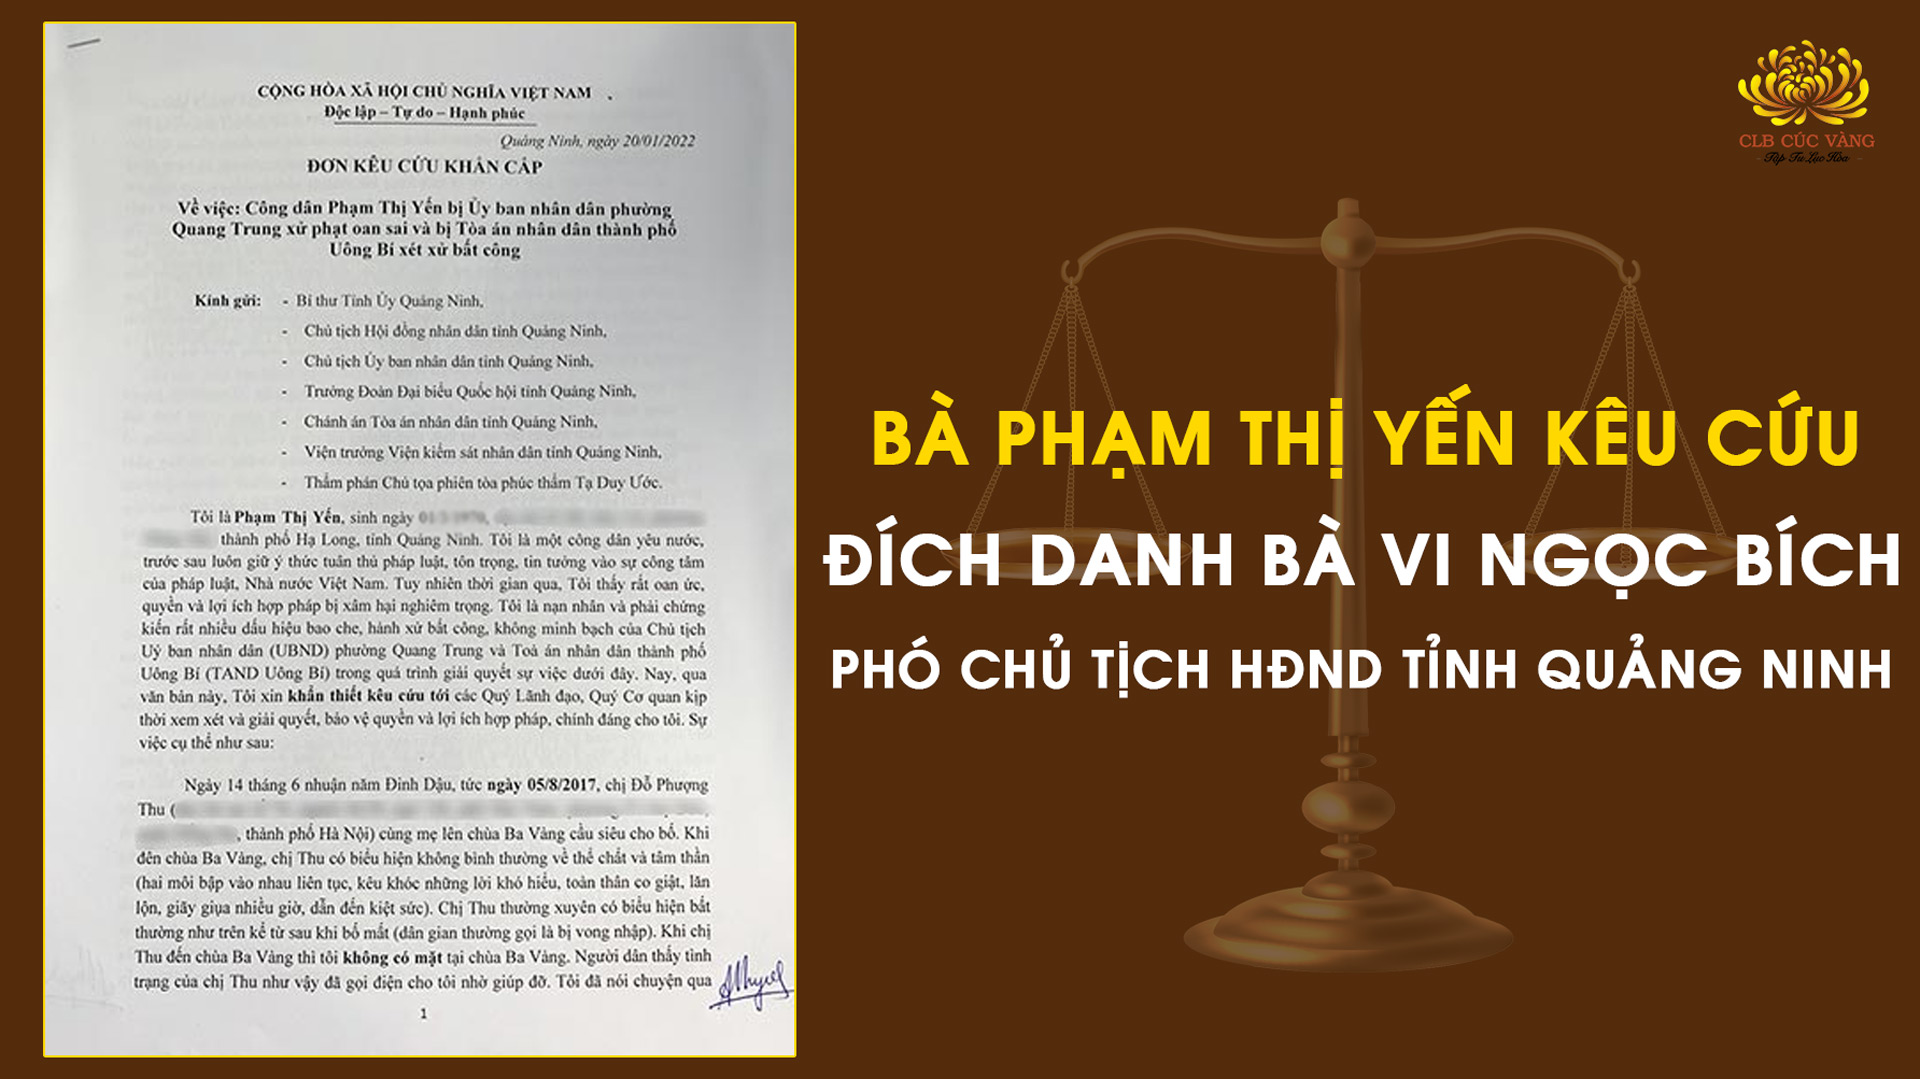 Bà Phạm Thị Yến kêu cứu đích danh bà Vi Ngọc Bích – Phó Chủ tịch HĐND tỉnh Quảng Ninh